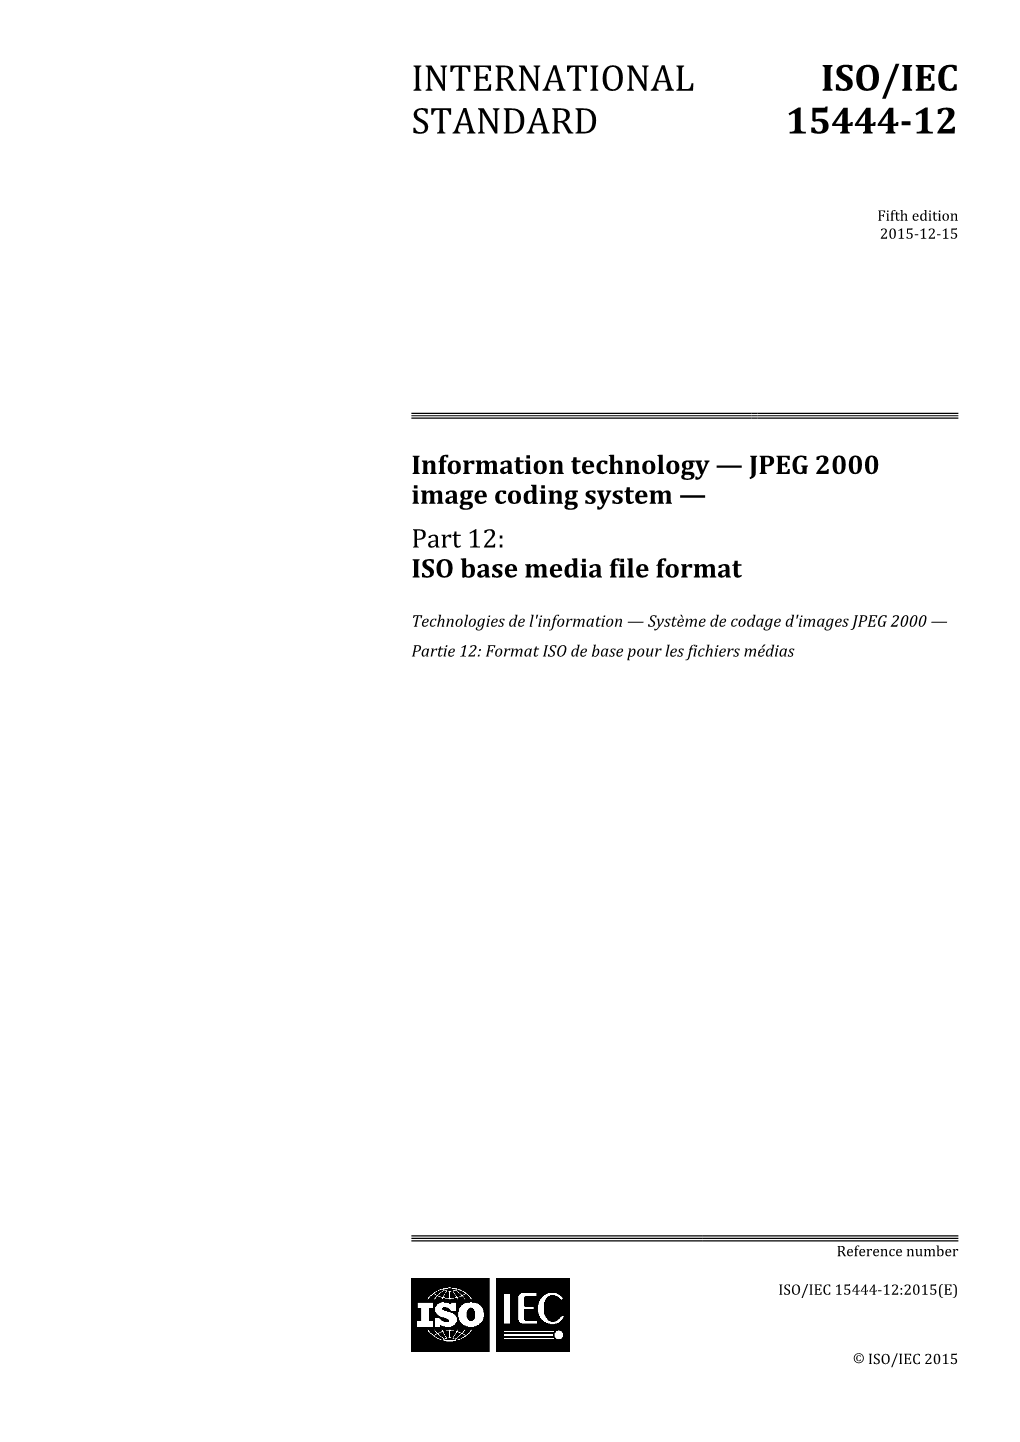 International Standard Iso/Iec 15444-12:2015(E)